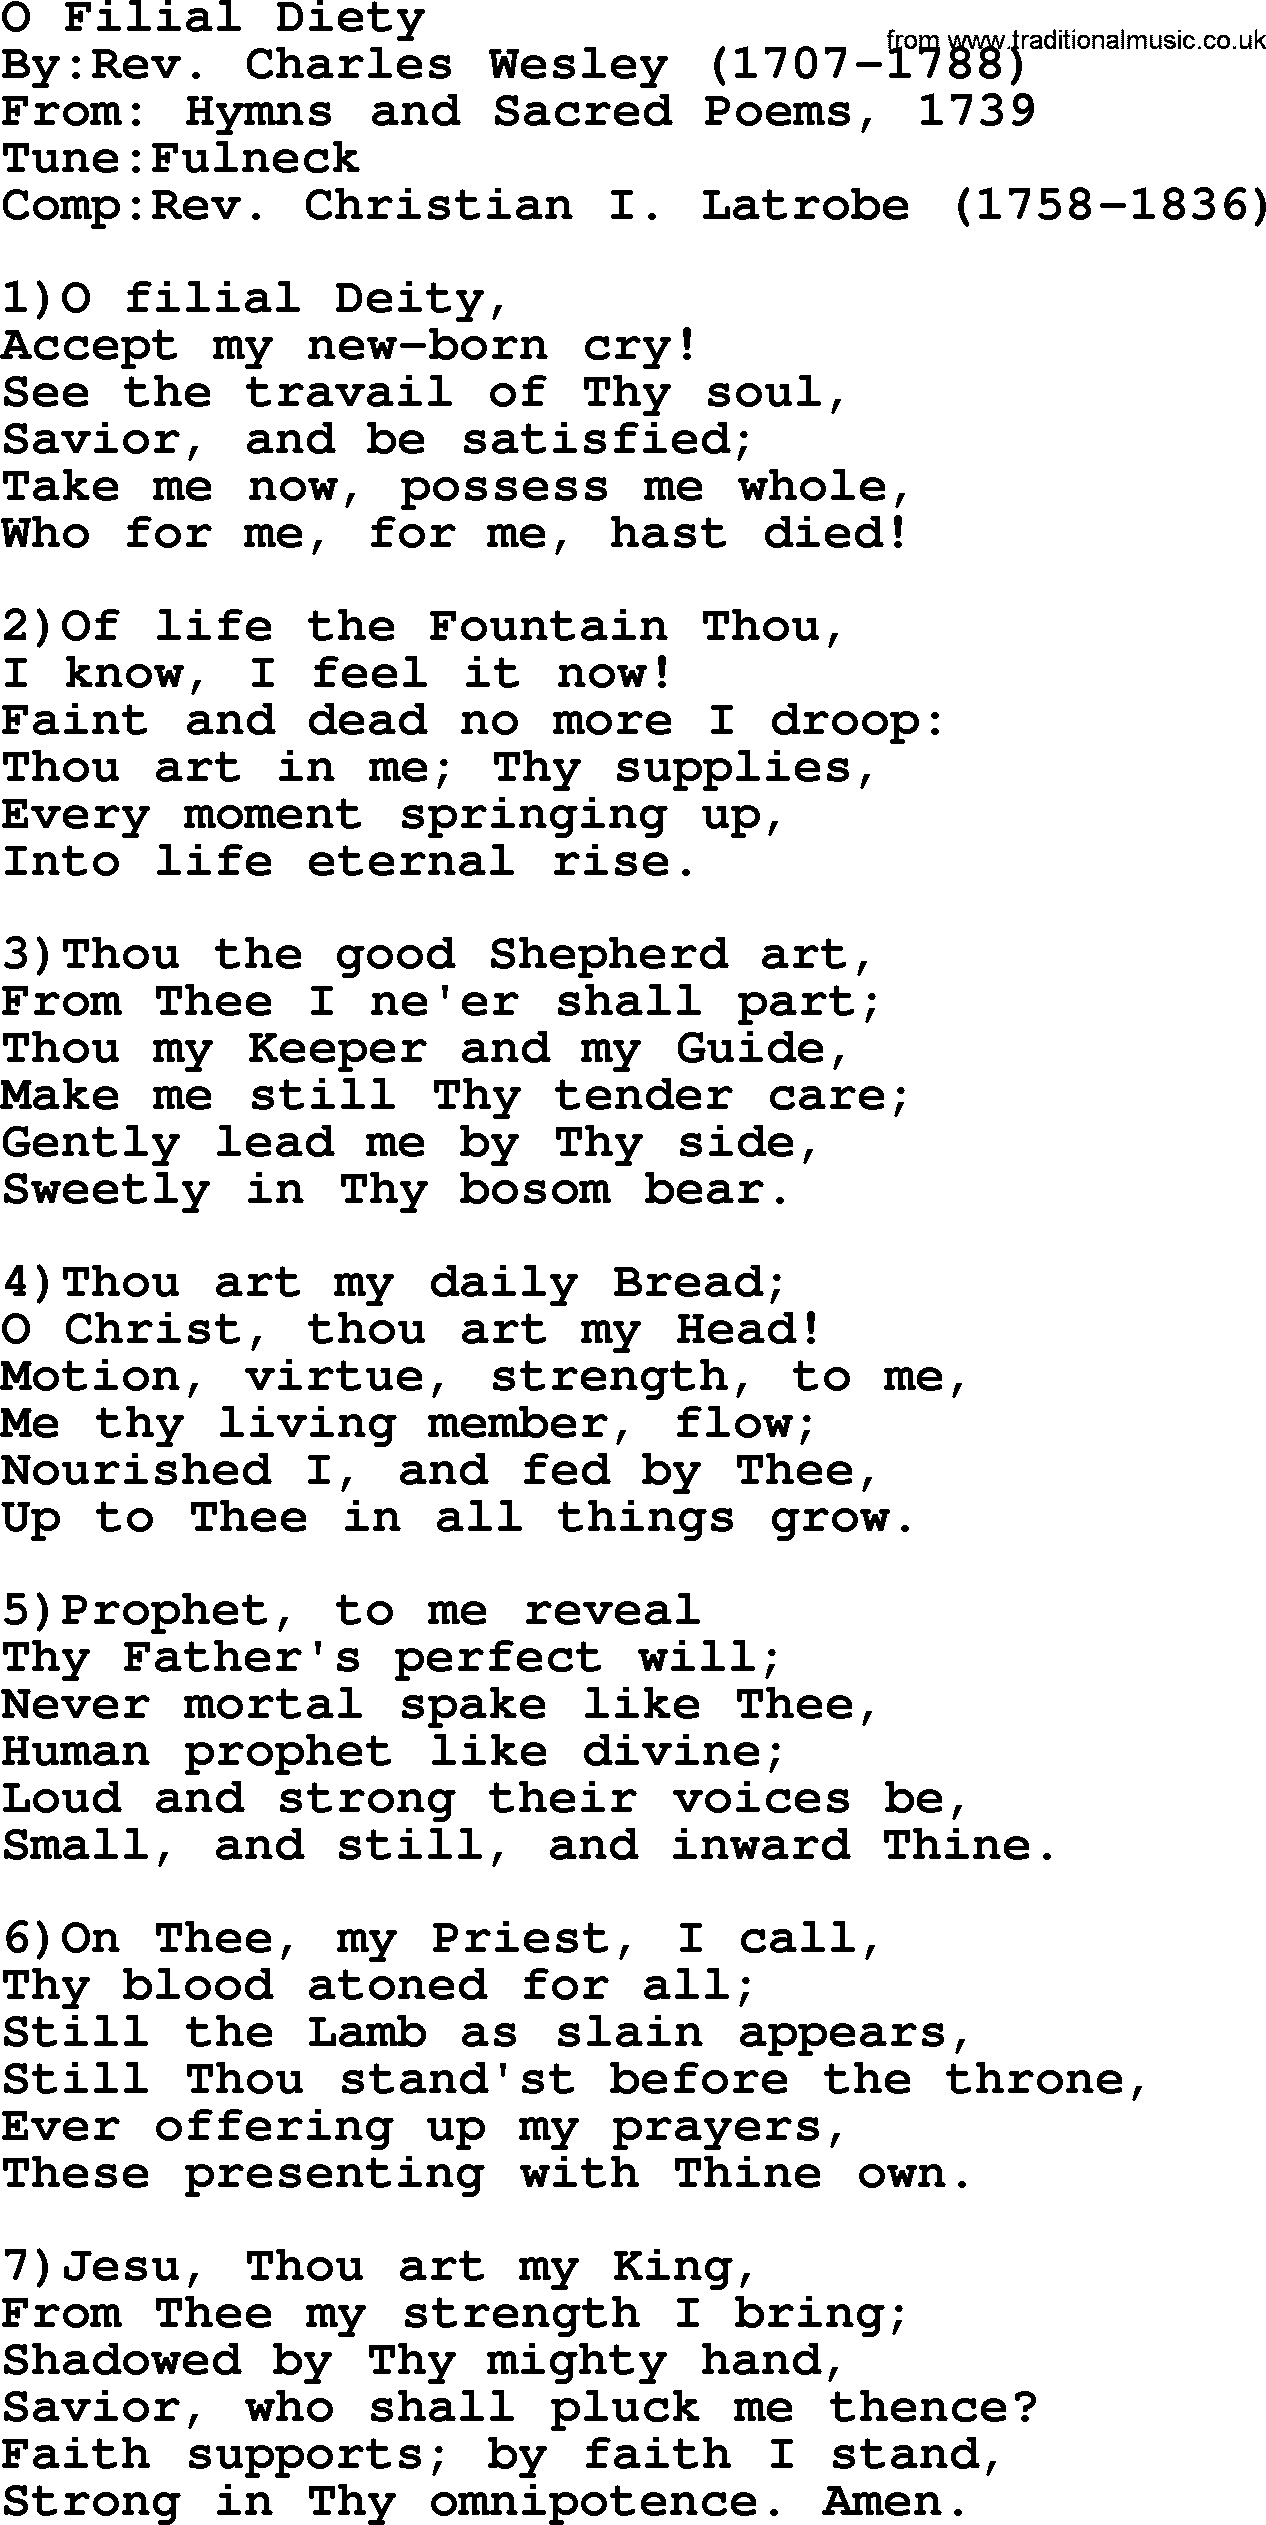 Methodist Hymn: O Filial Diety, lyrics